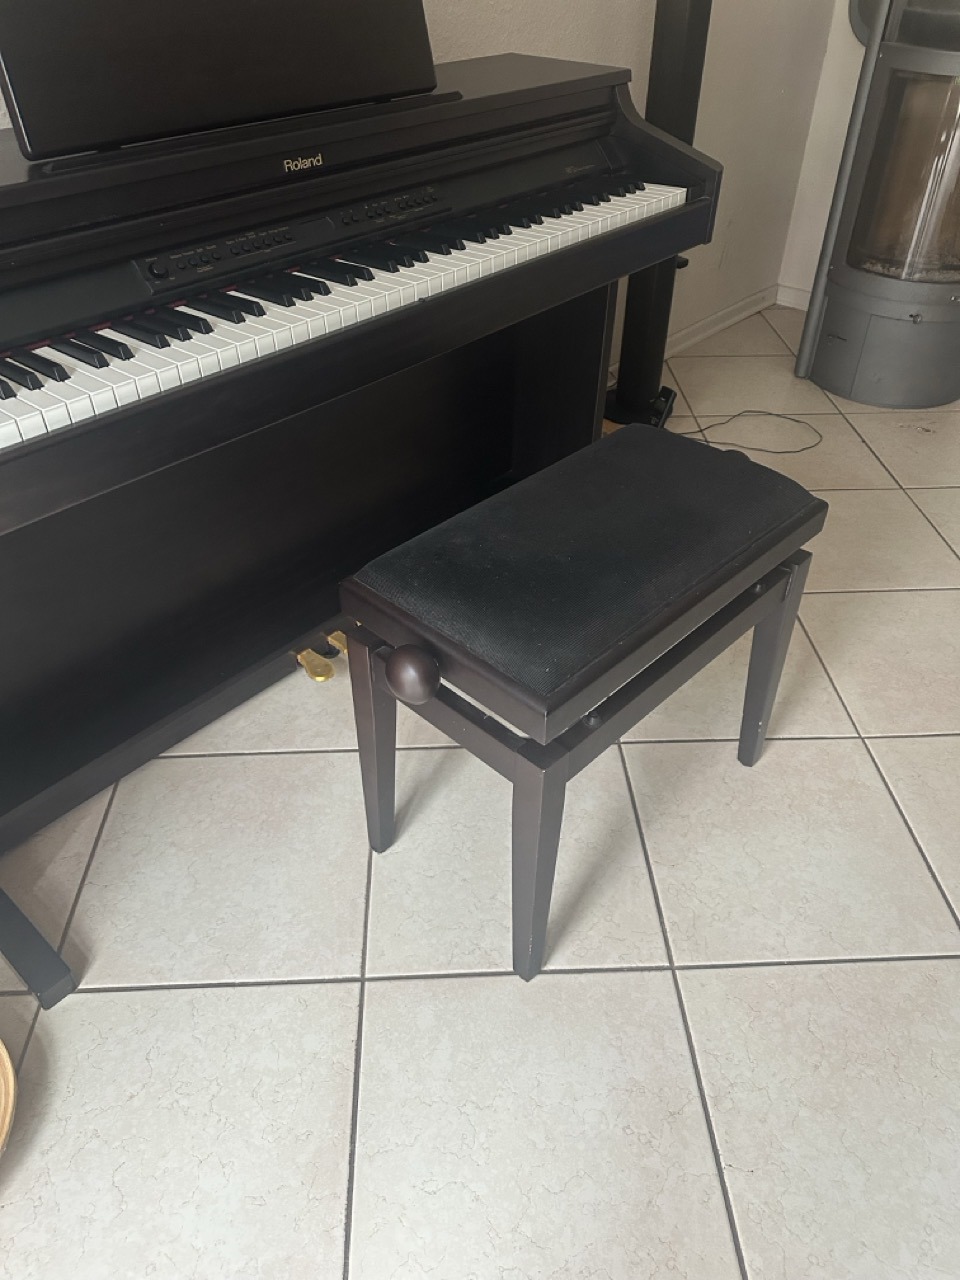 E-Piano Digitales Klavier Roland HP-2e, sehr guter Zustand mit höhenverstellbarem Klavierstuhl